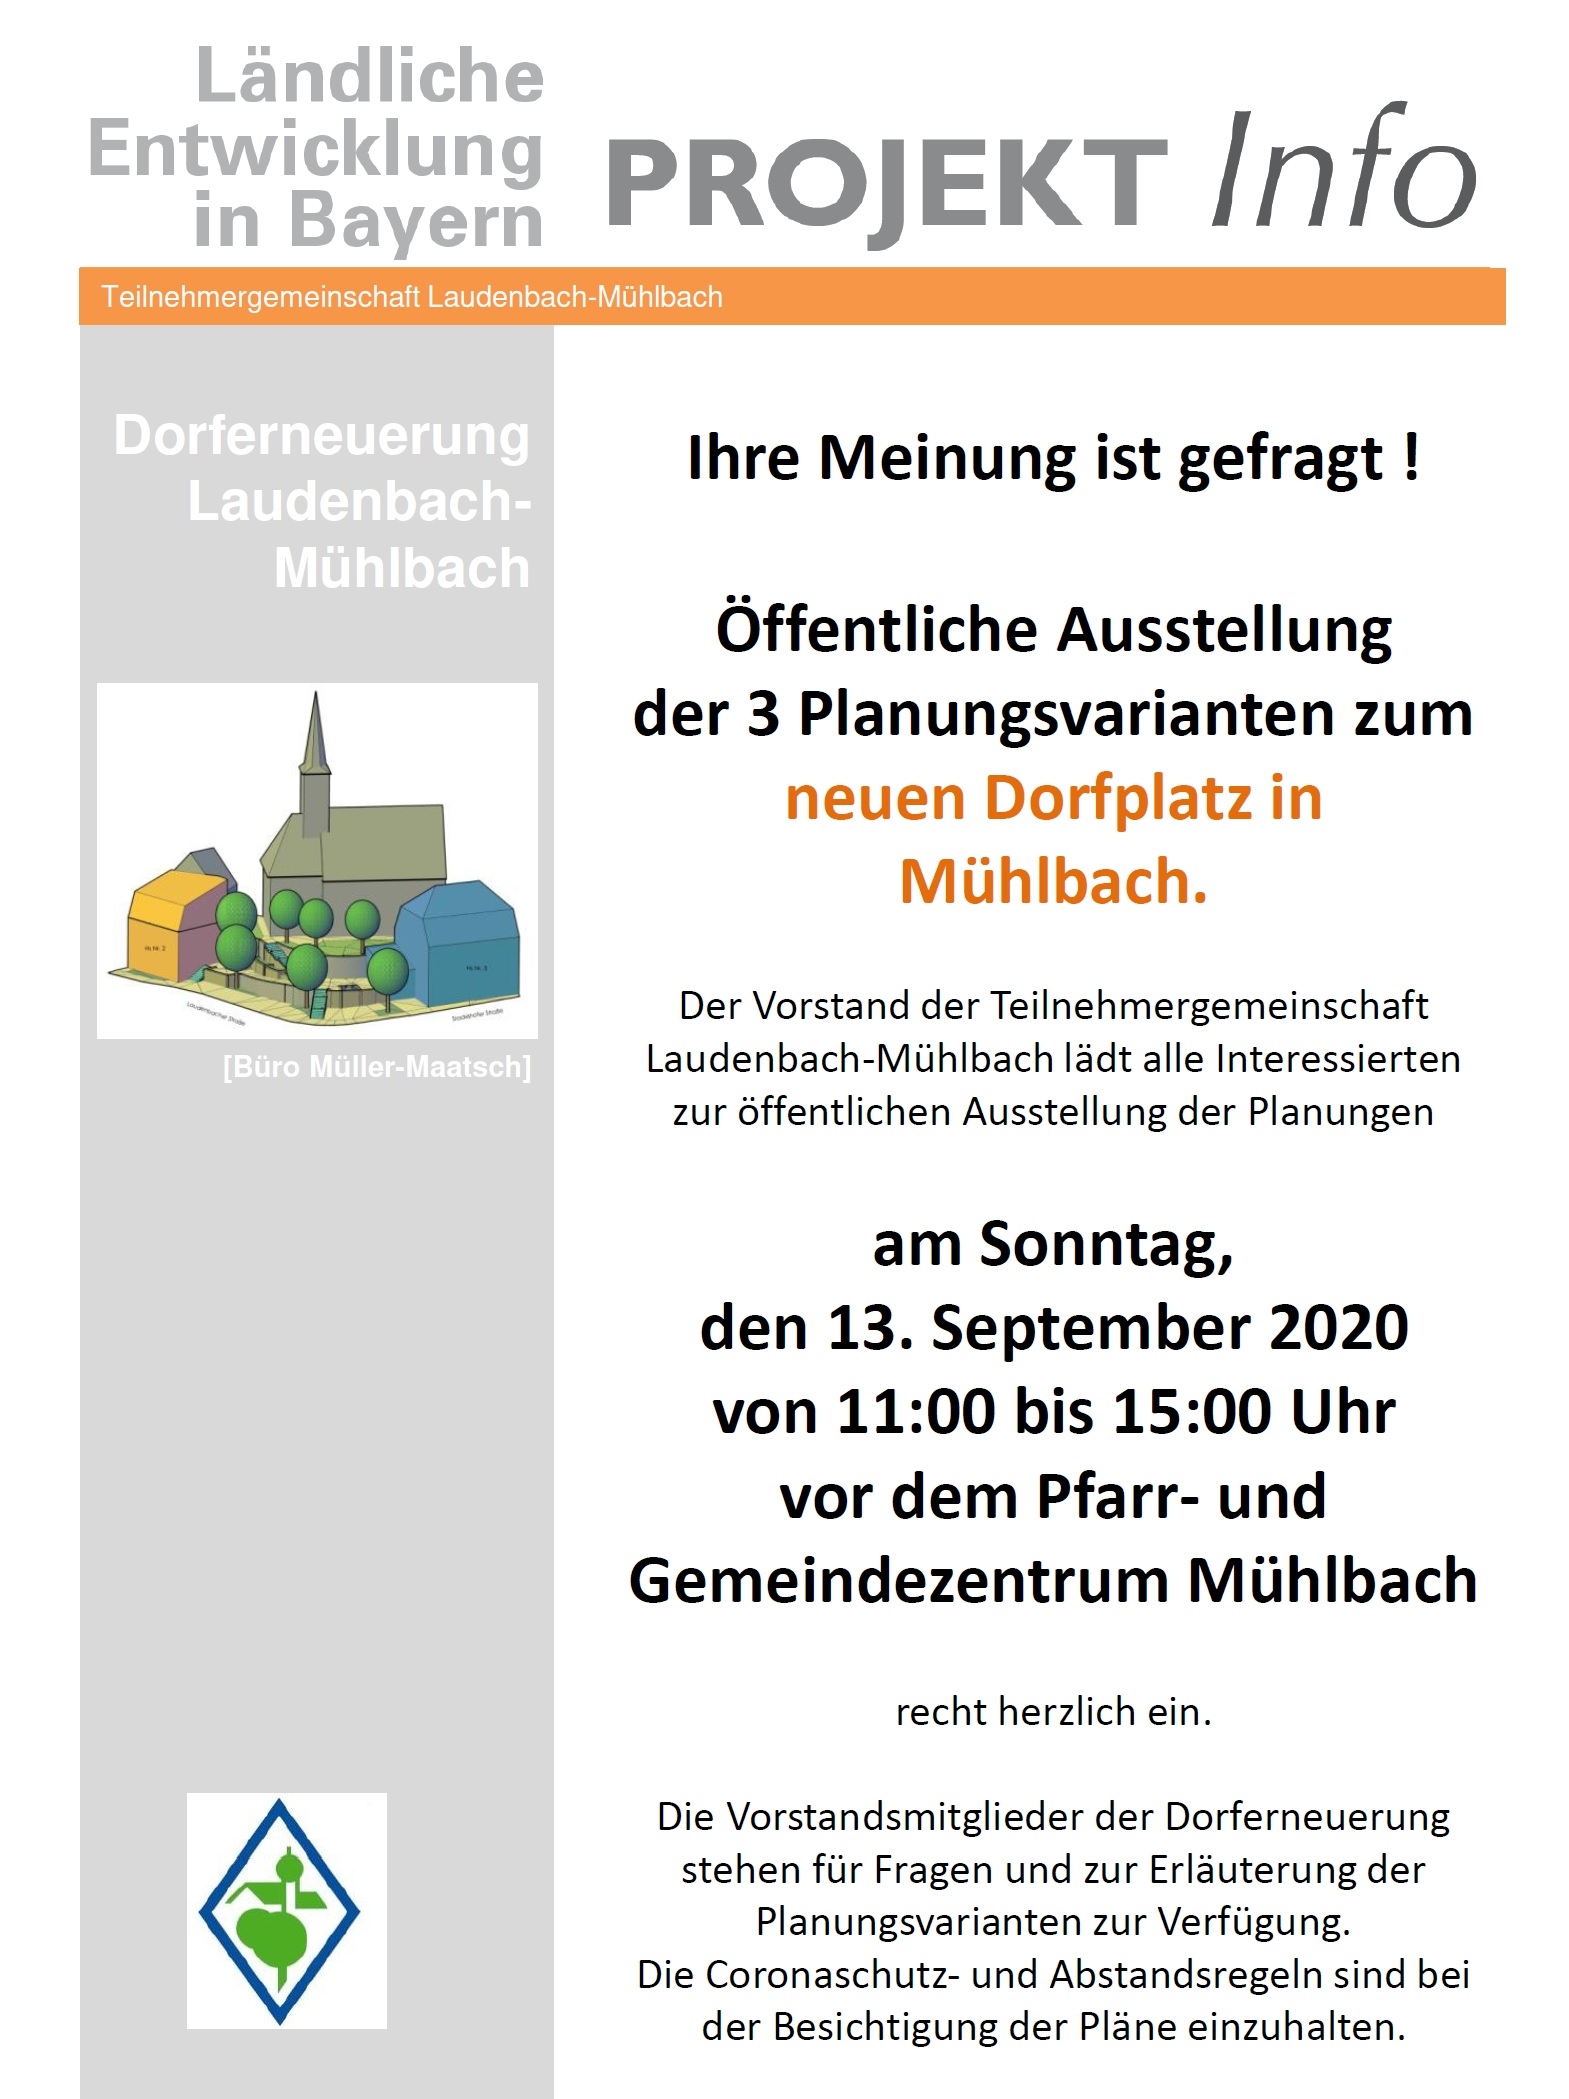 2020 09 13 Projektinfo DE Laudenbach Mühlbach Ausstellung Planungsvarianten DorfplatzMühlbach